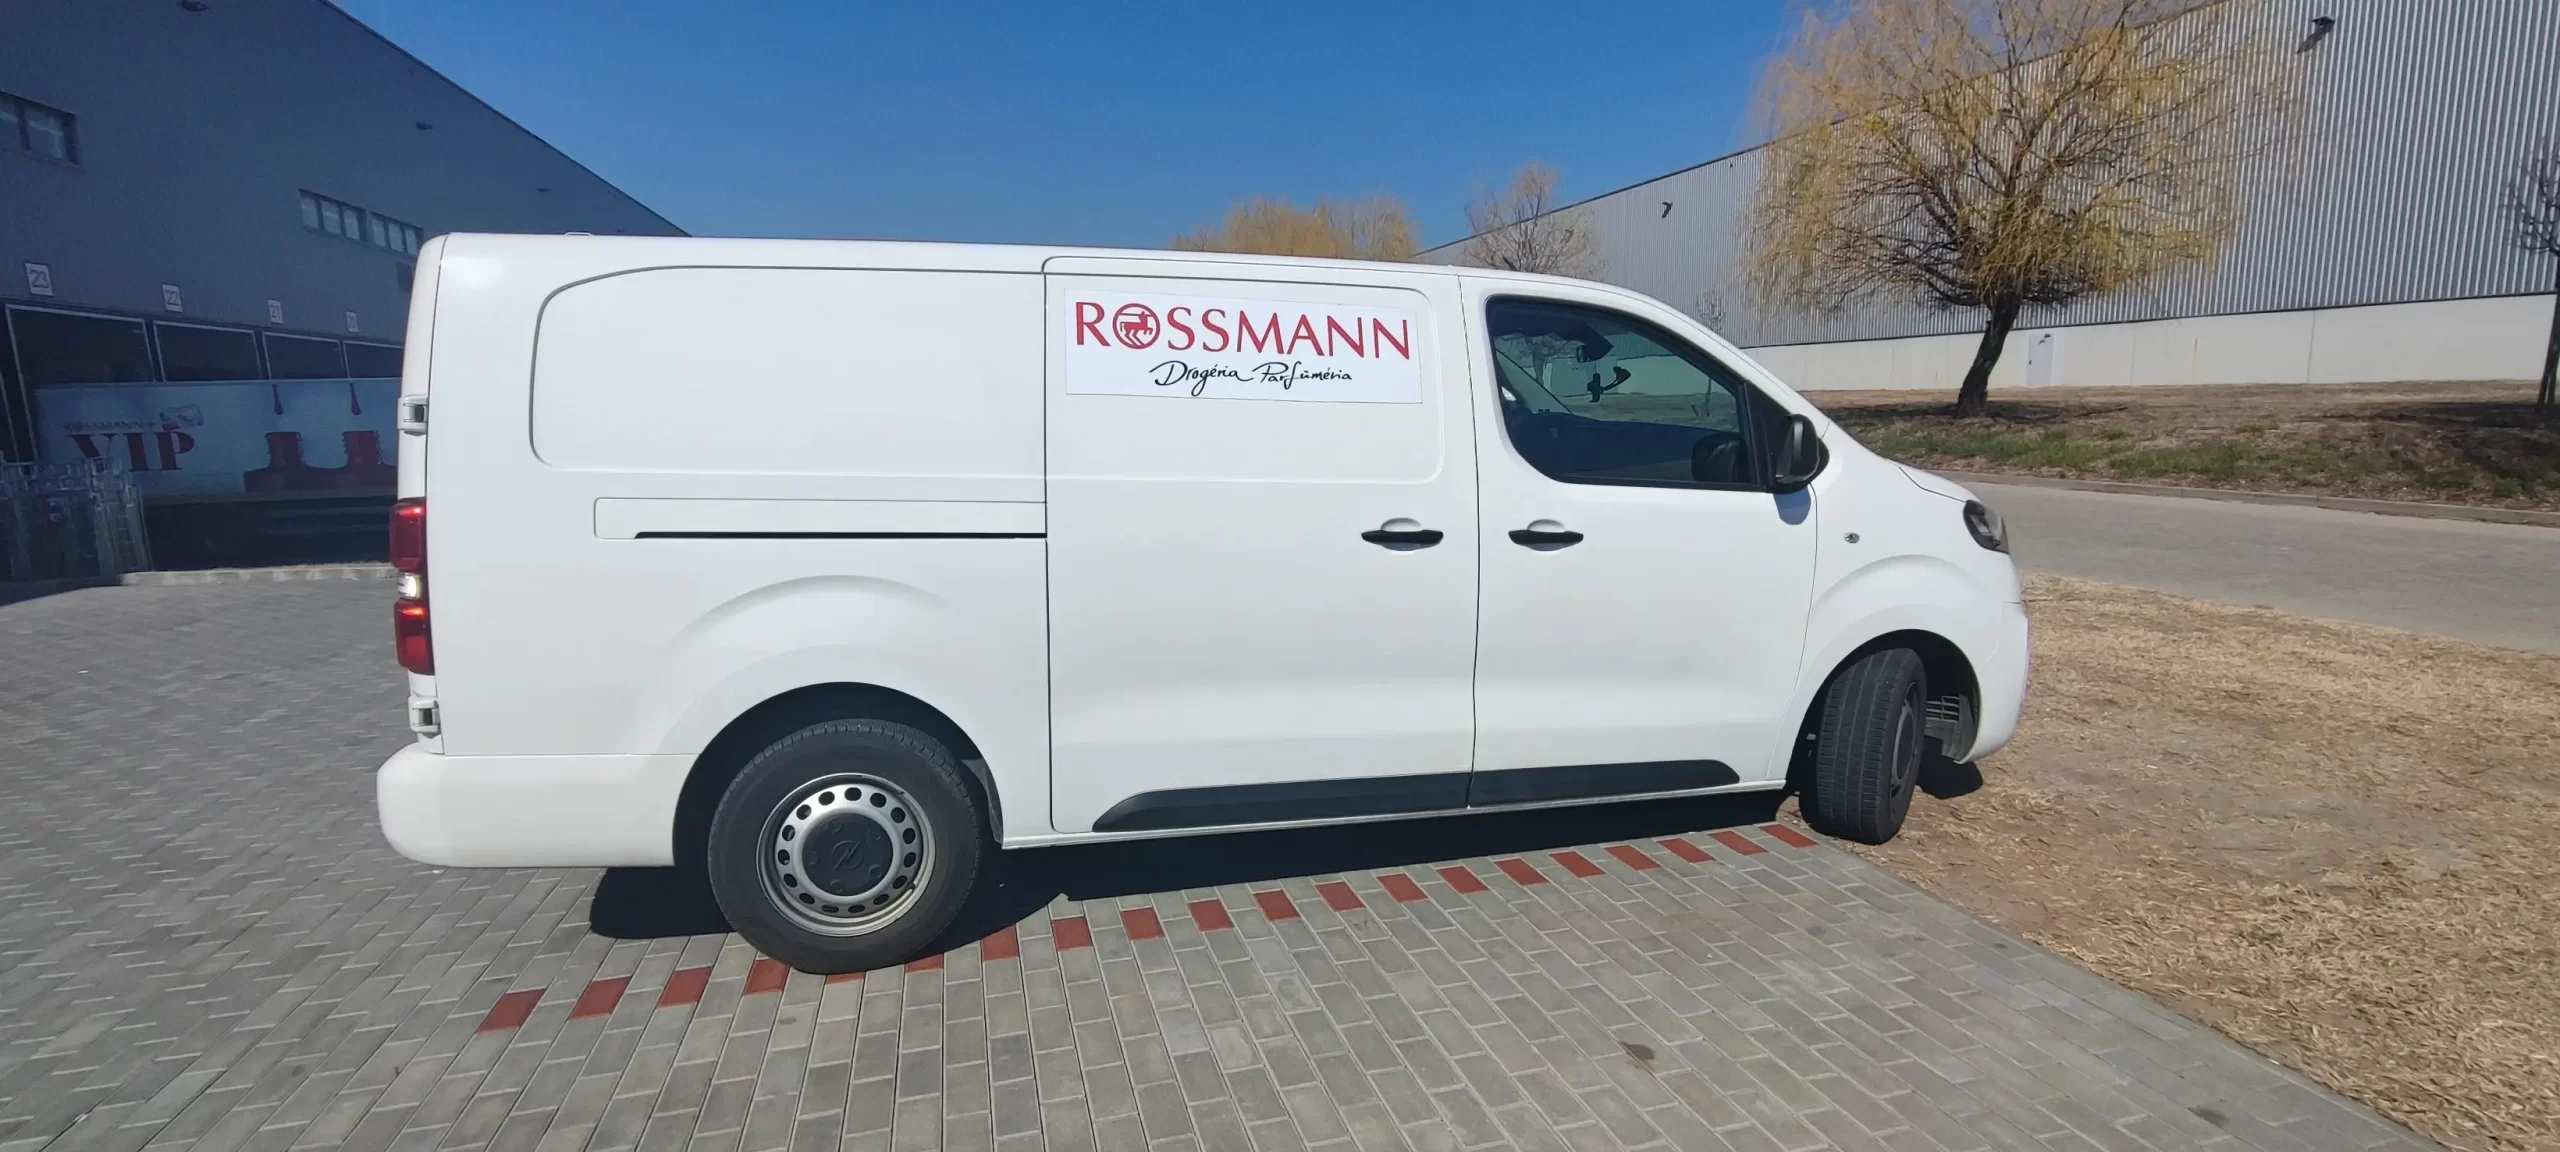 Rossmann mágneses autódekoráció